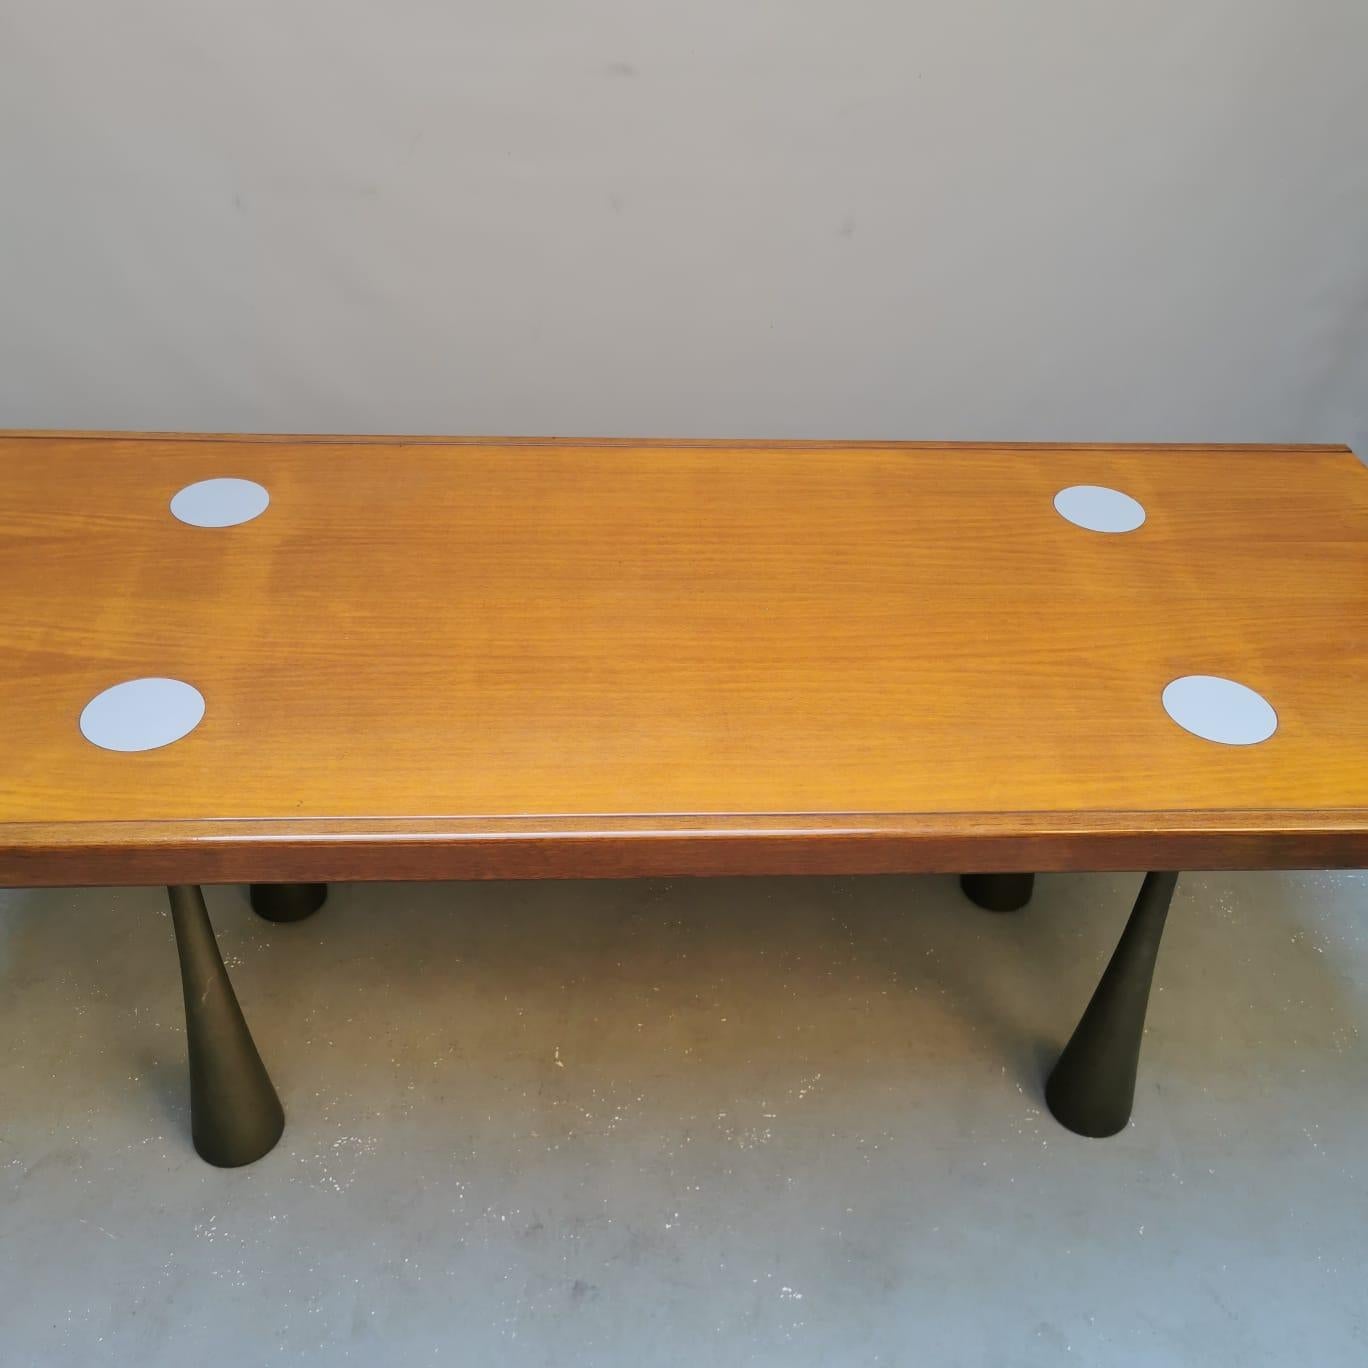 Cette table est une pièce exceptionnelle et convoitée, considérée comme une perle rare dans le monde des projets de design de collection, conçue par Angelo Mangiarotti et fabriquée par La Sorgente Dei Mobili, Arosio, au début des années 70. Il